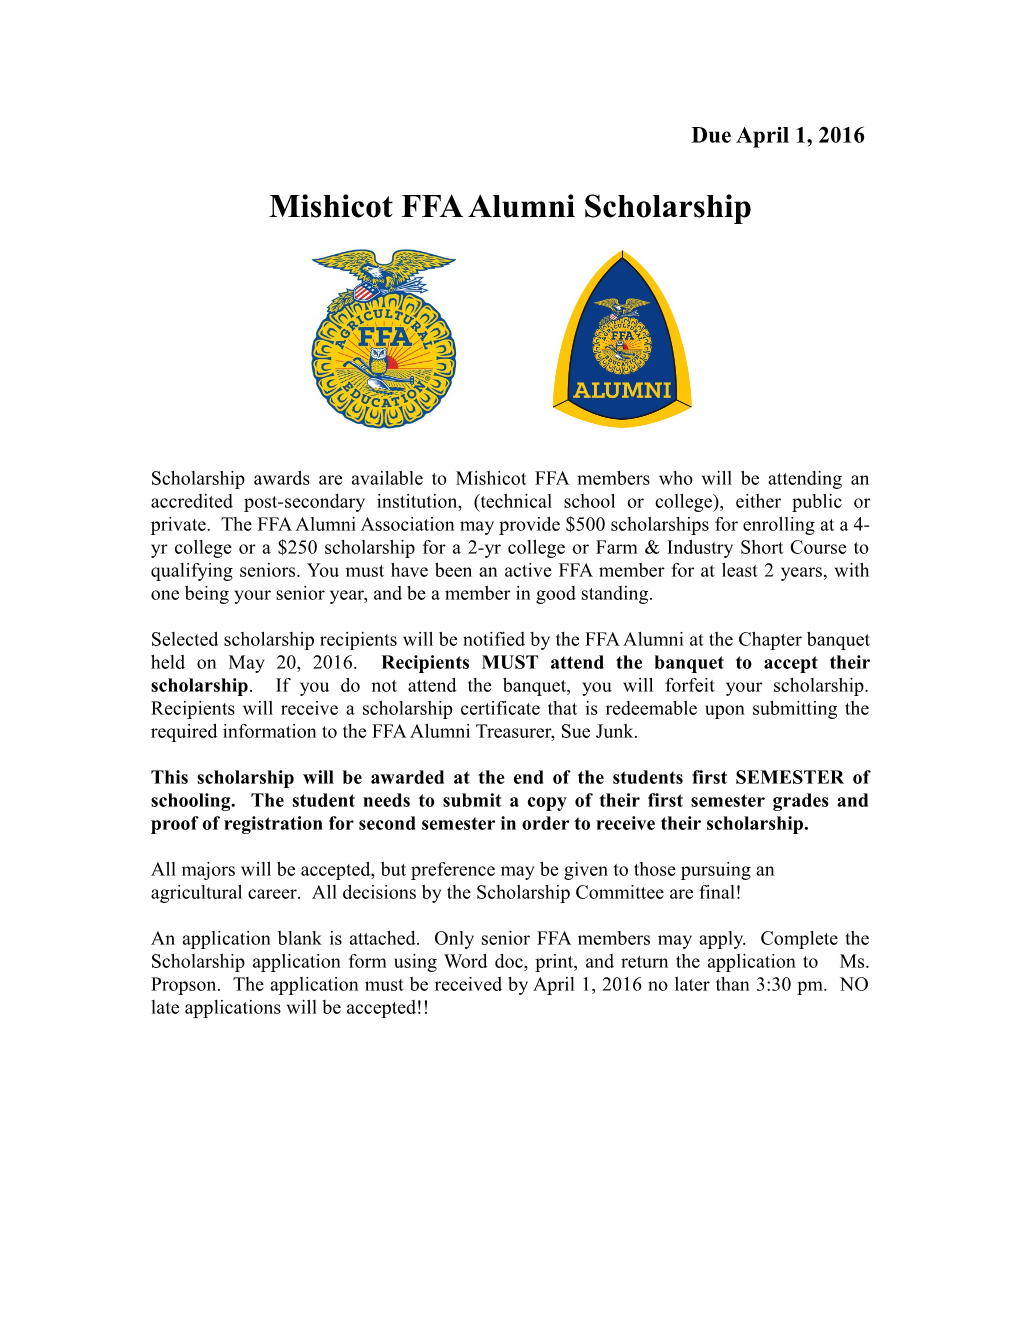 Mishicot FFA Alumni Scholarship